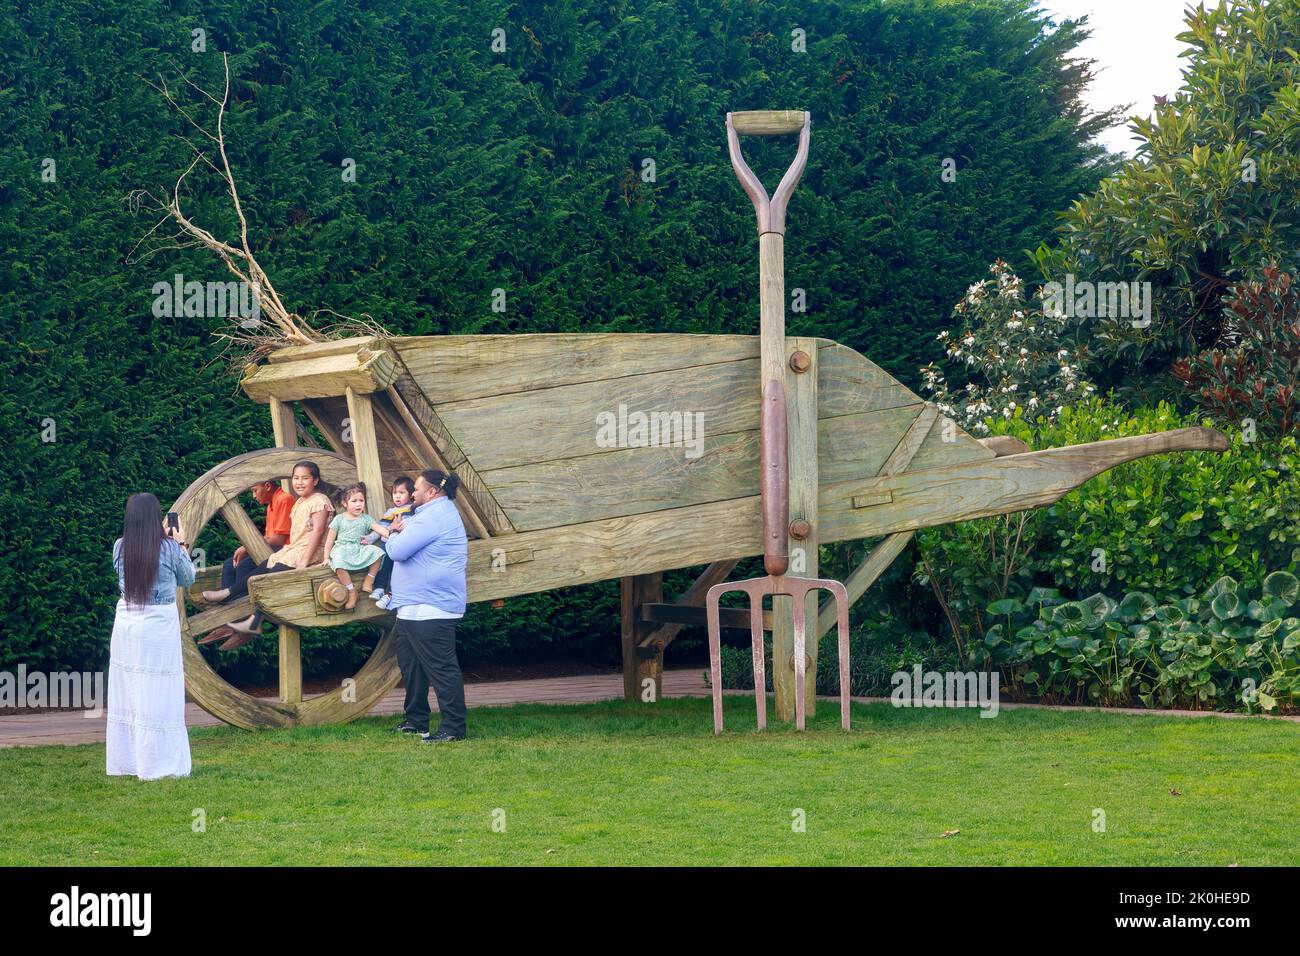 Une famille pose à côté d'une brouette géante dans le jardin surréaliste, l'un des jardins à thème du parc Hamilton Gardens, Hamilton, Nouvelle-Zélande Banque D'Images